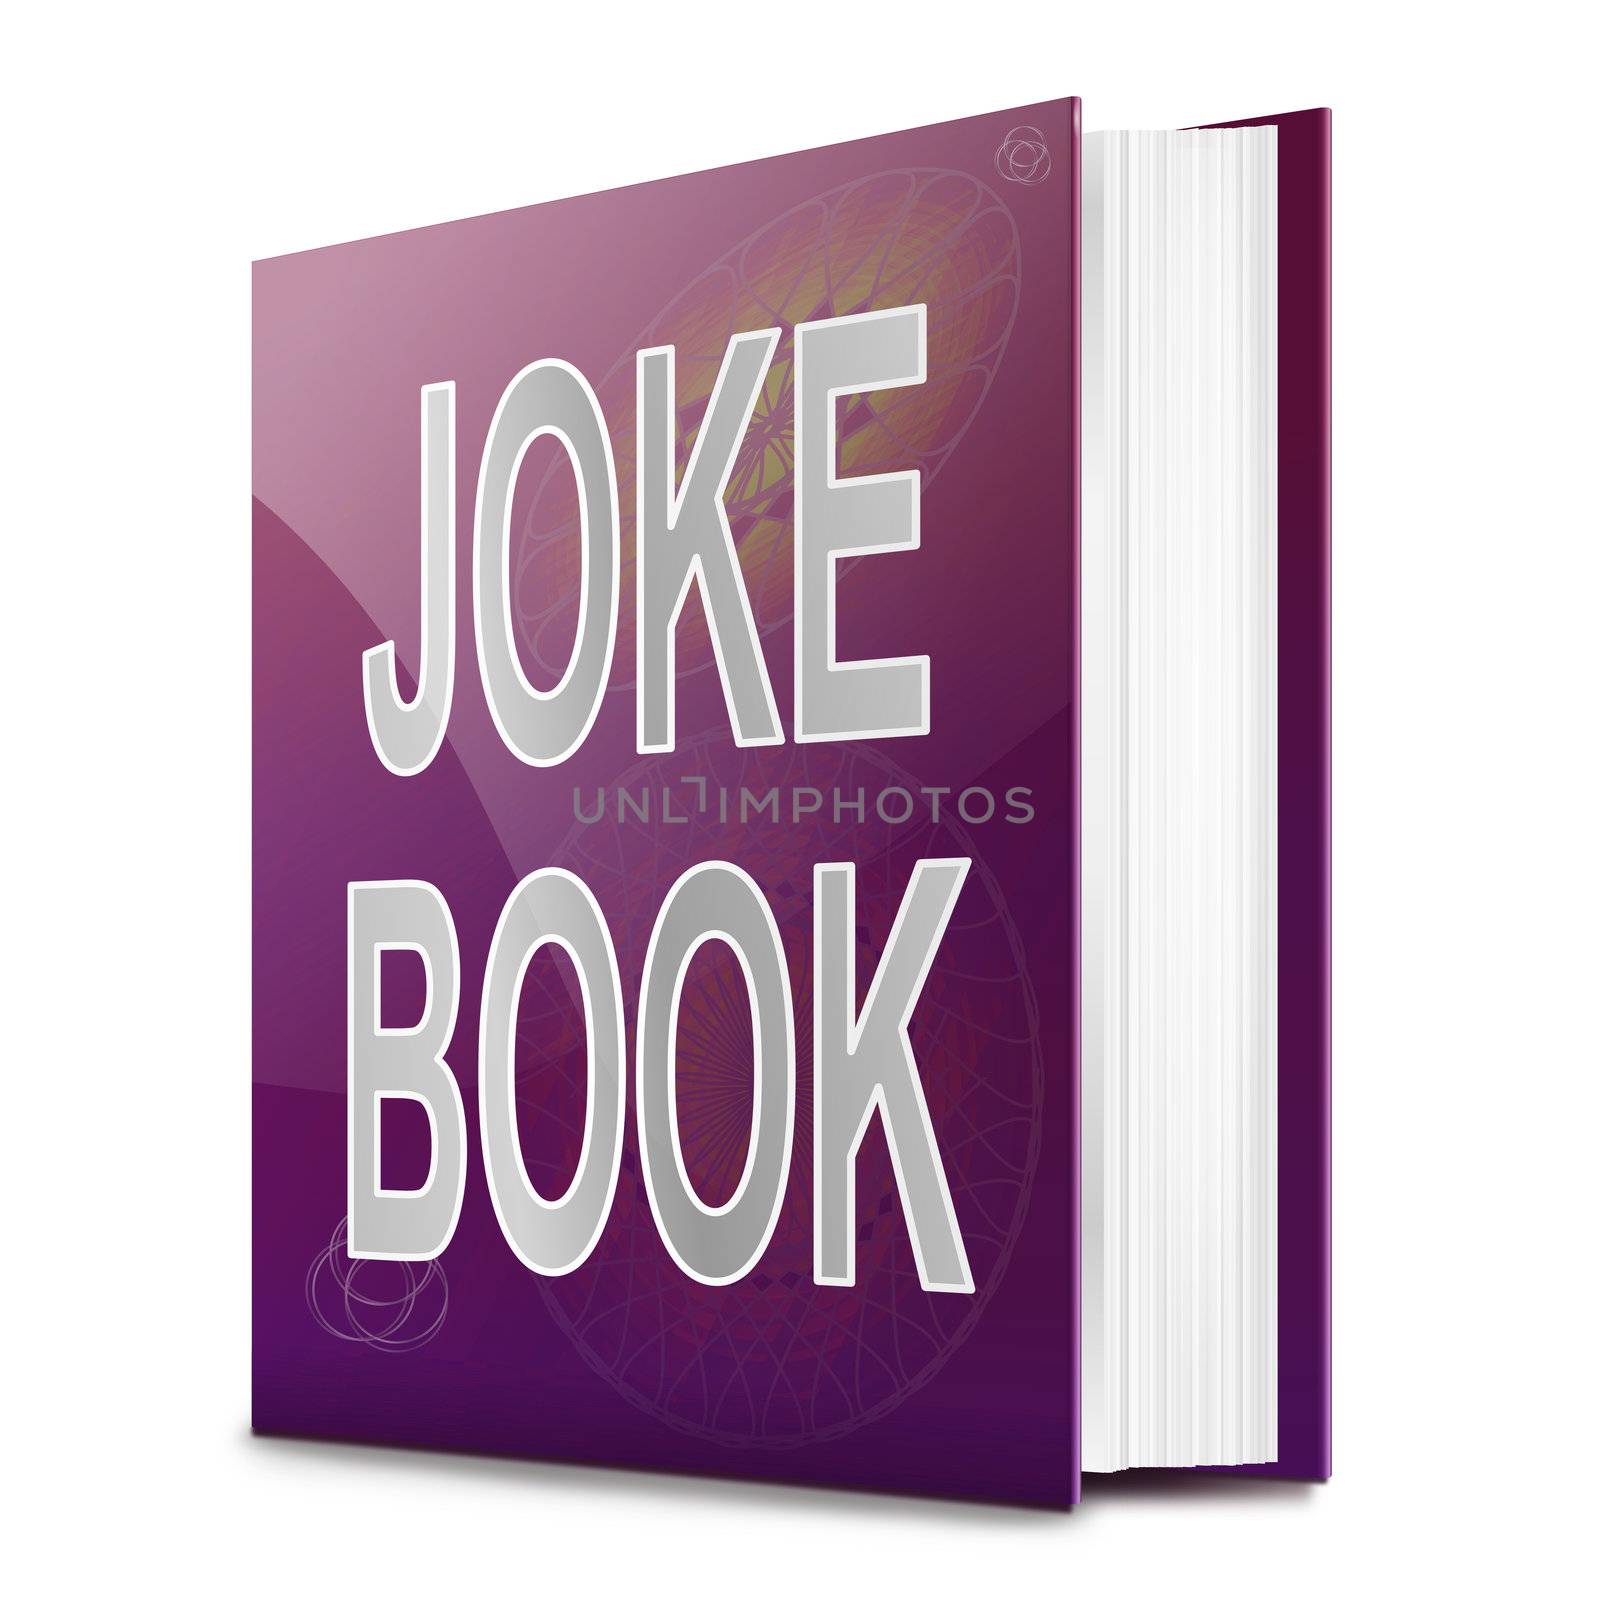 Joke book. by 72soul